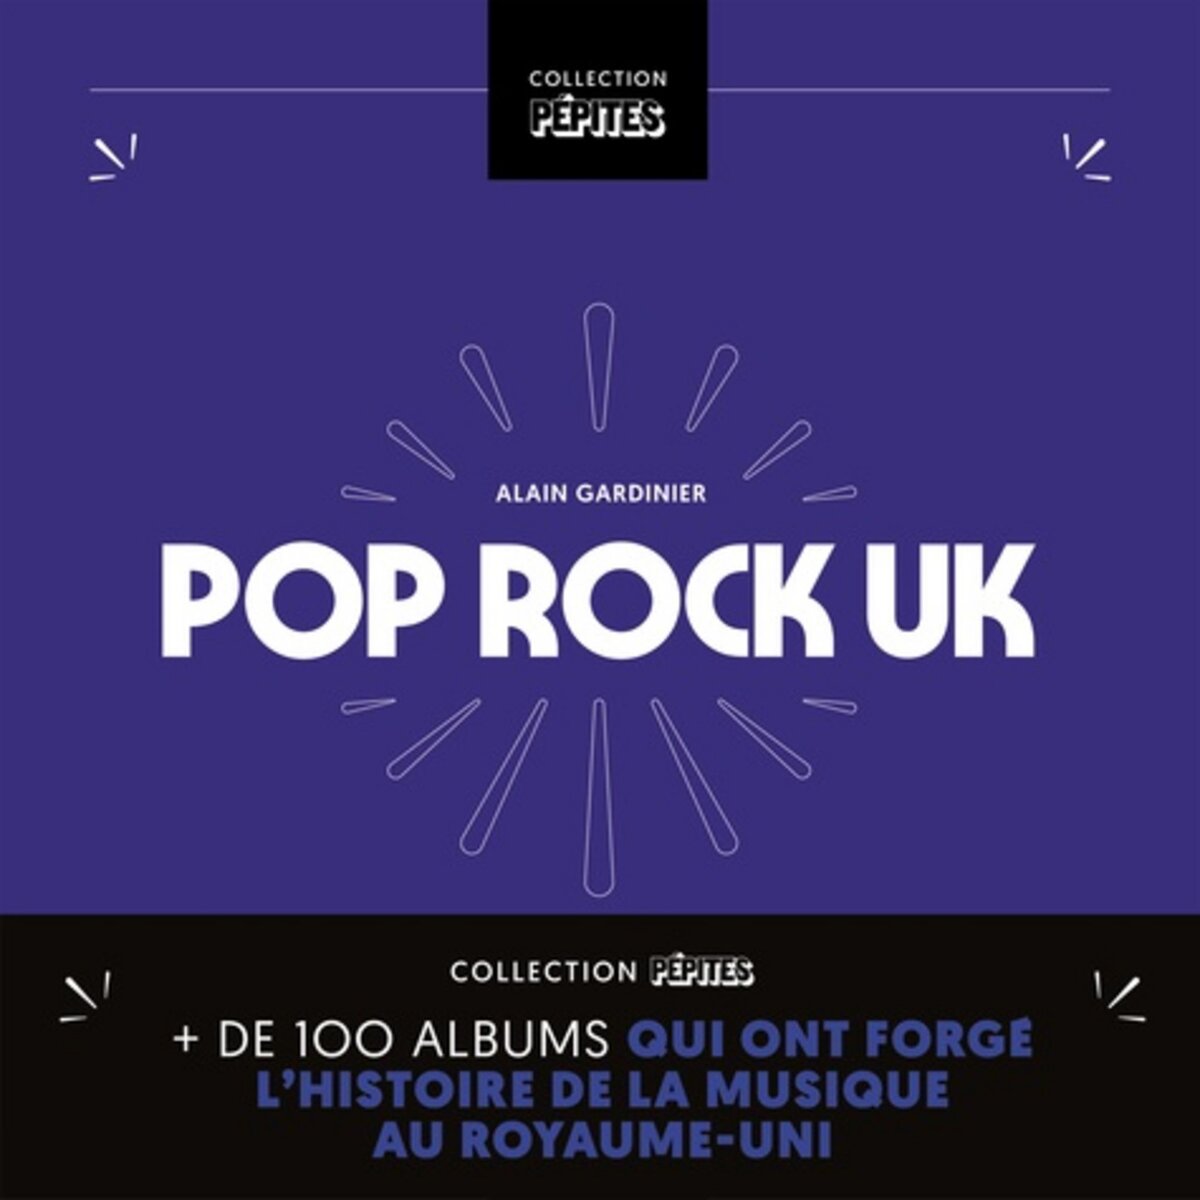  POP ROCK UK, Gardinier Alain